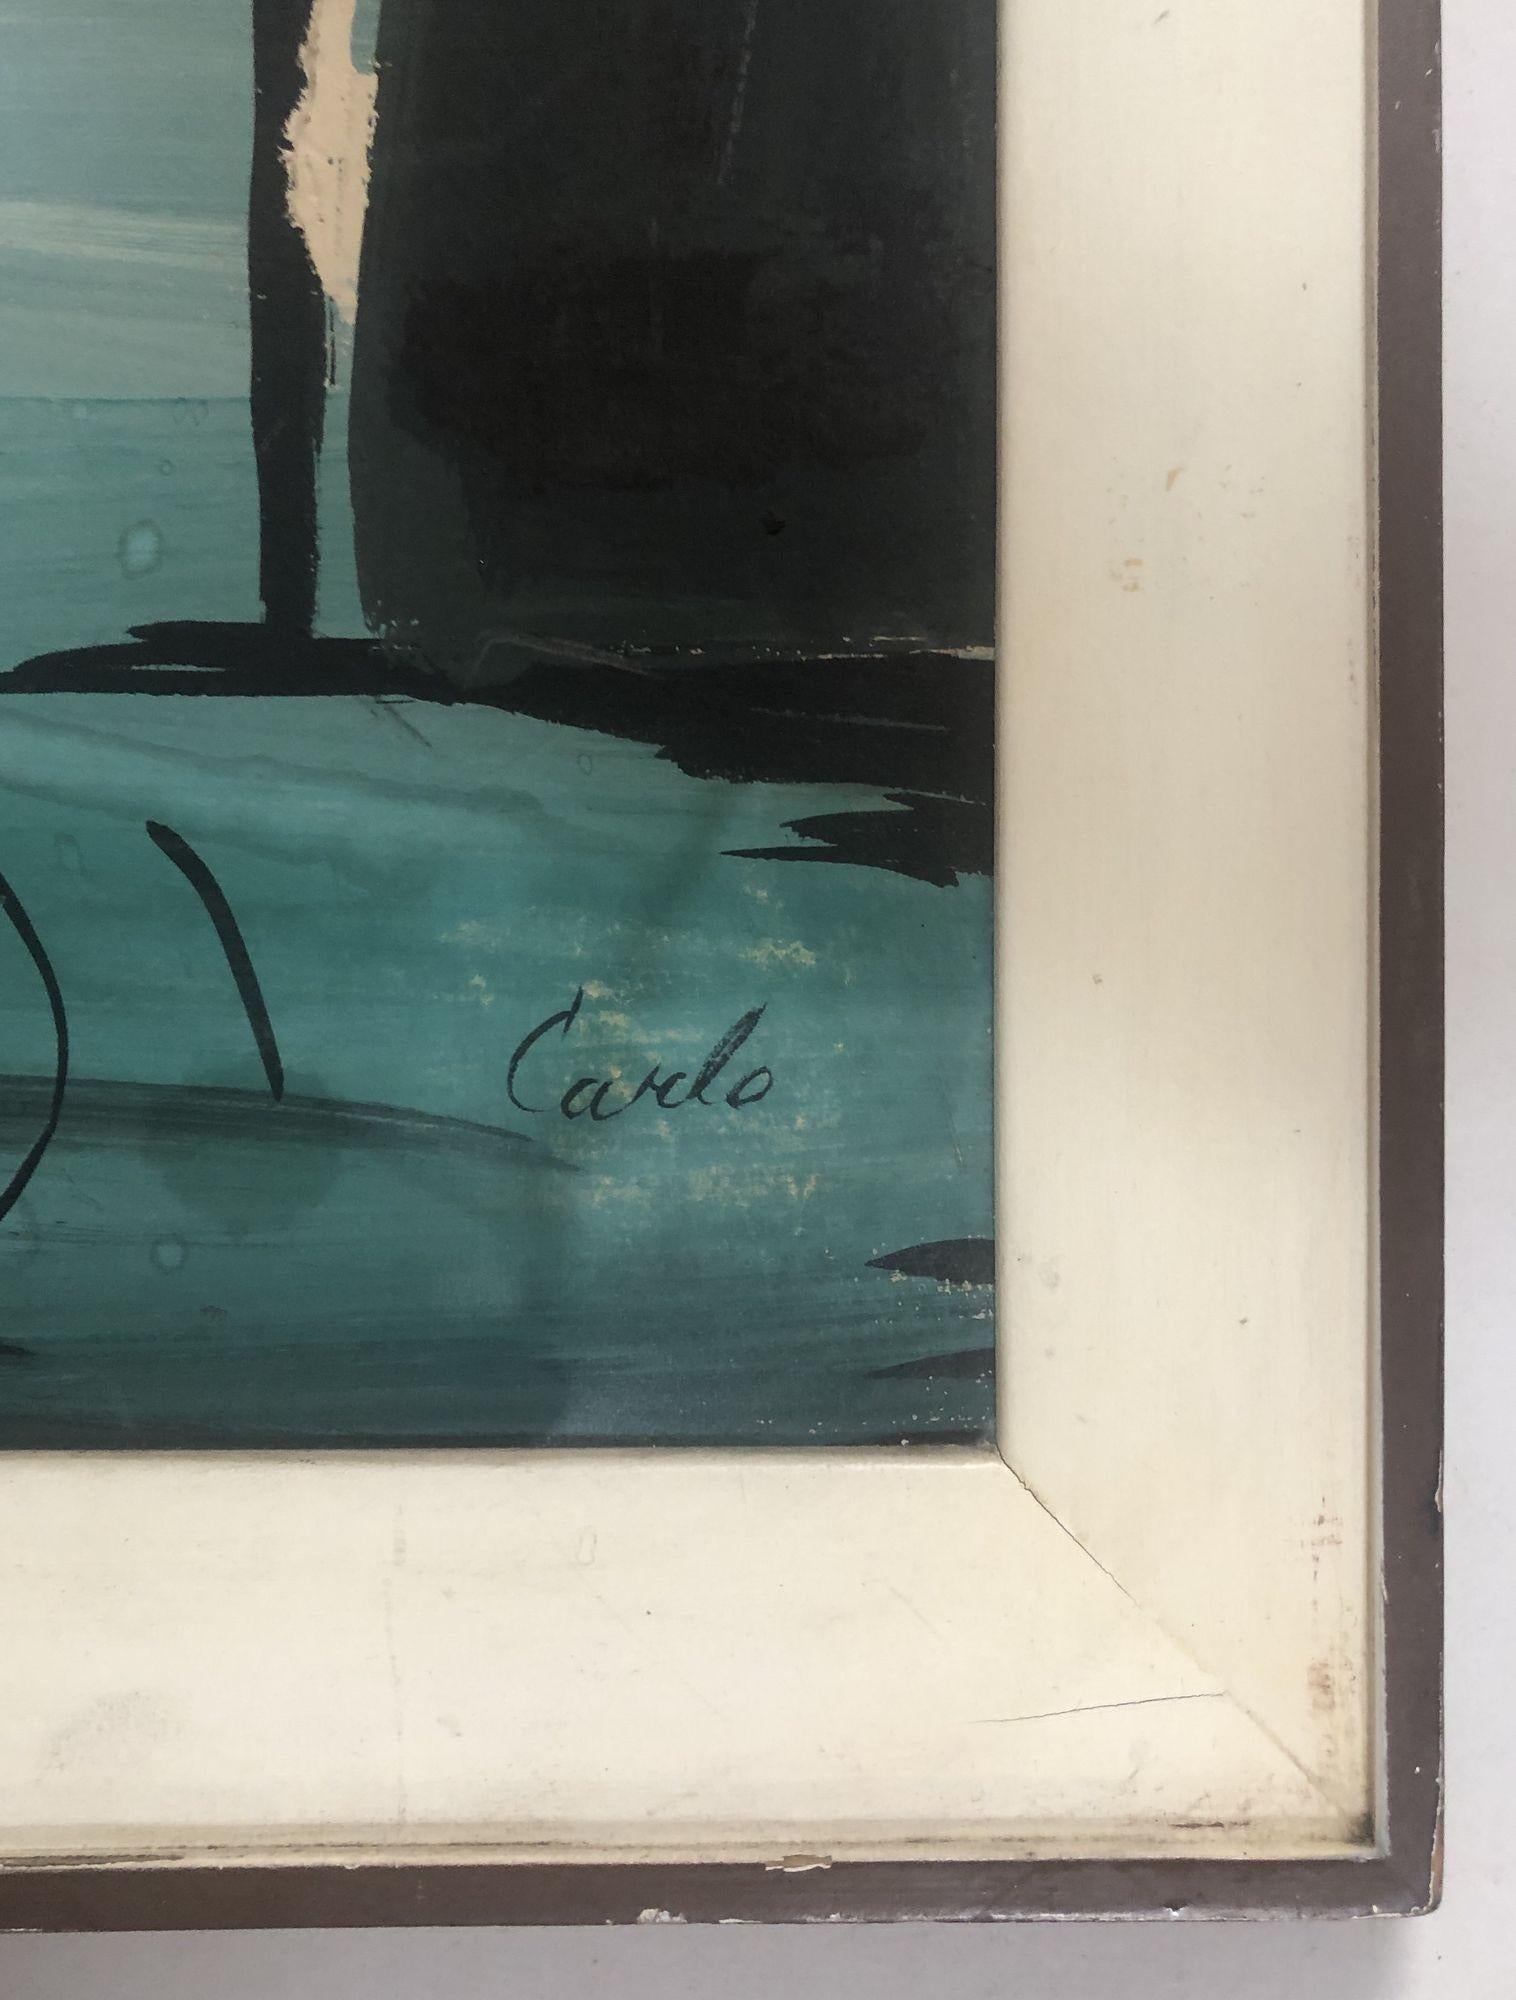 Paire de paysages abstraits à l'acrylique expressionniste moderniste sur toile avec la silhouette d'une personne debout dans une mer faite de bâtiments aux formes géométriques, signés 